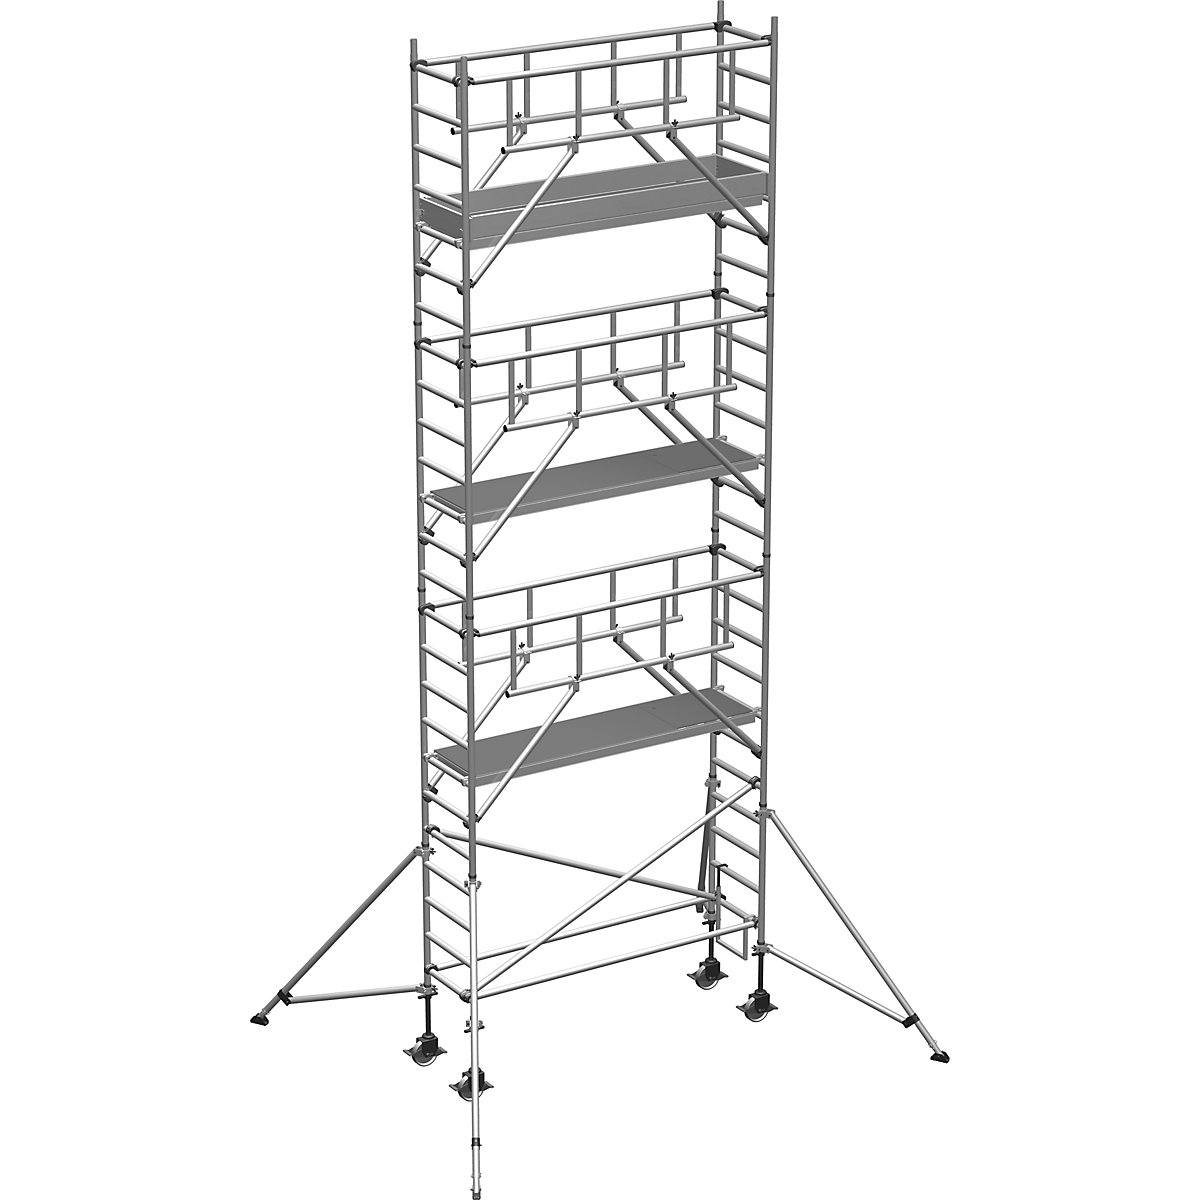 Pomični oder S-PLUS – ZARGES, ploščad 1,80 x 0,60 m, delovna višina 8,40 m